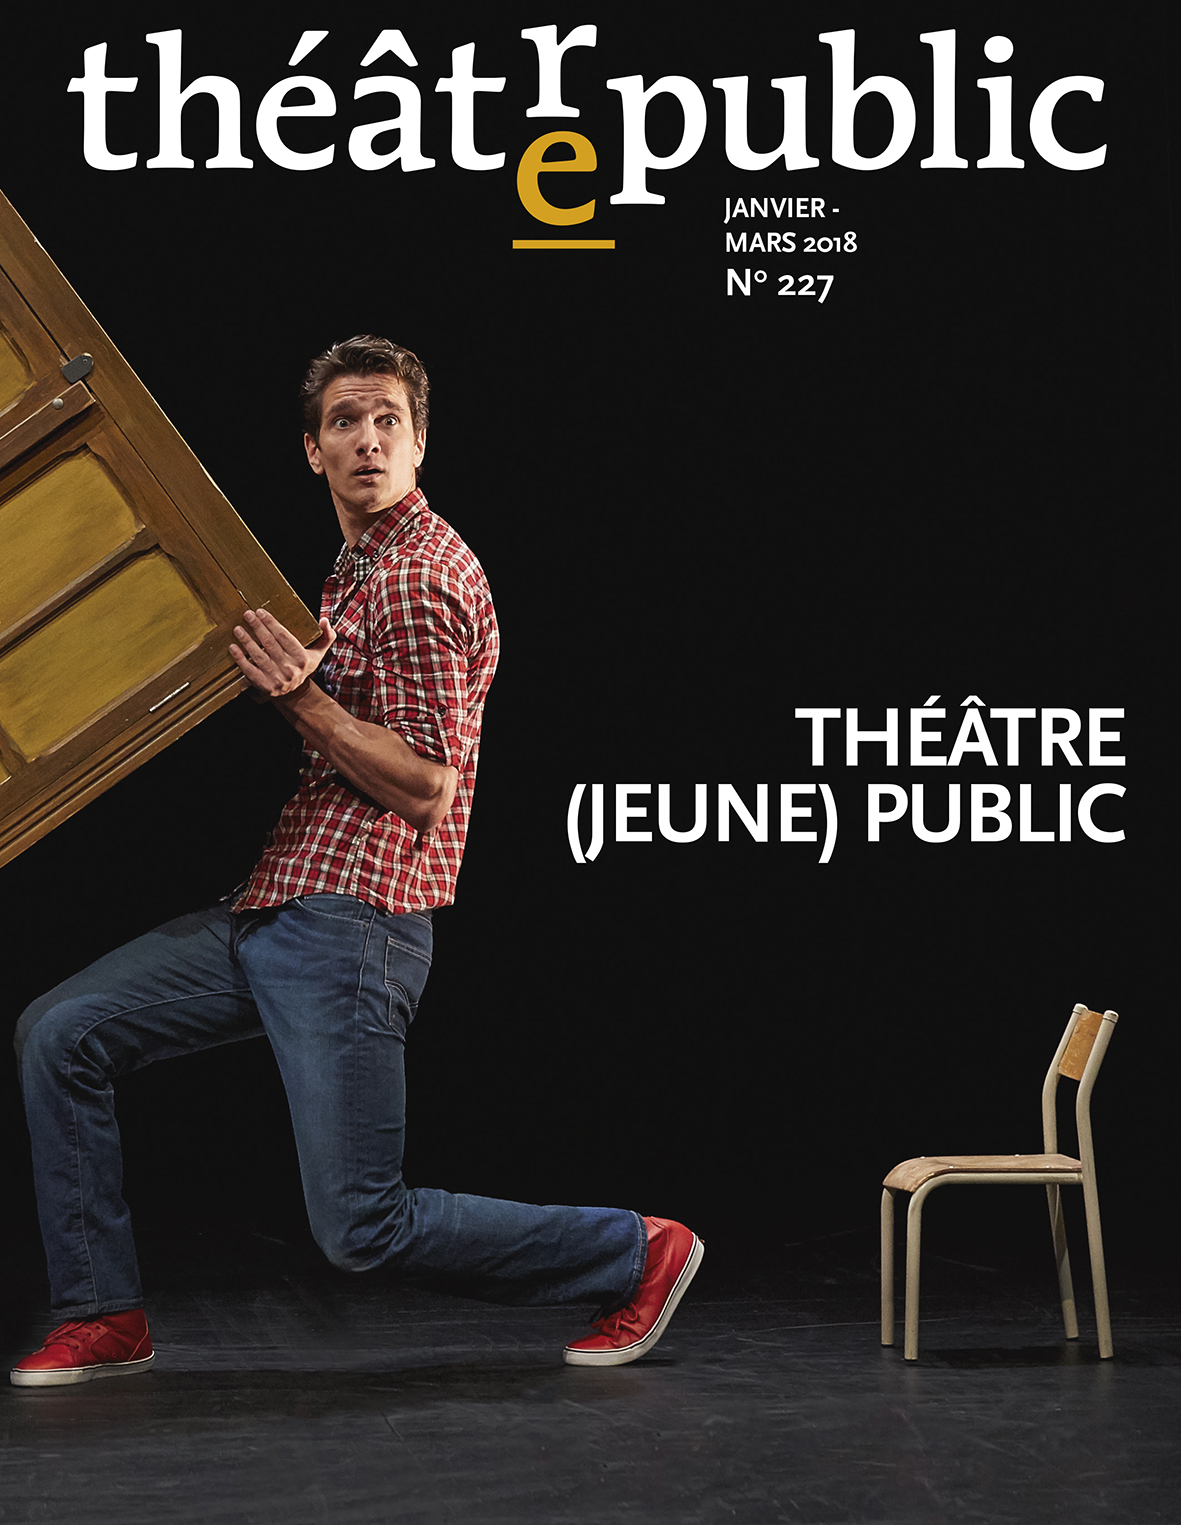 Théâtre (jeune) public | Numéro 227 | Théâtre/Public